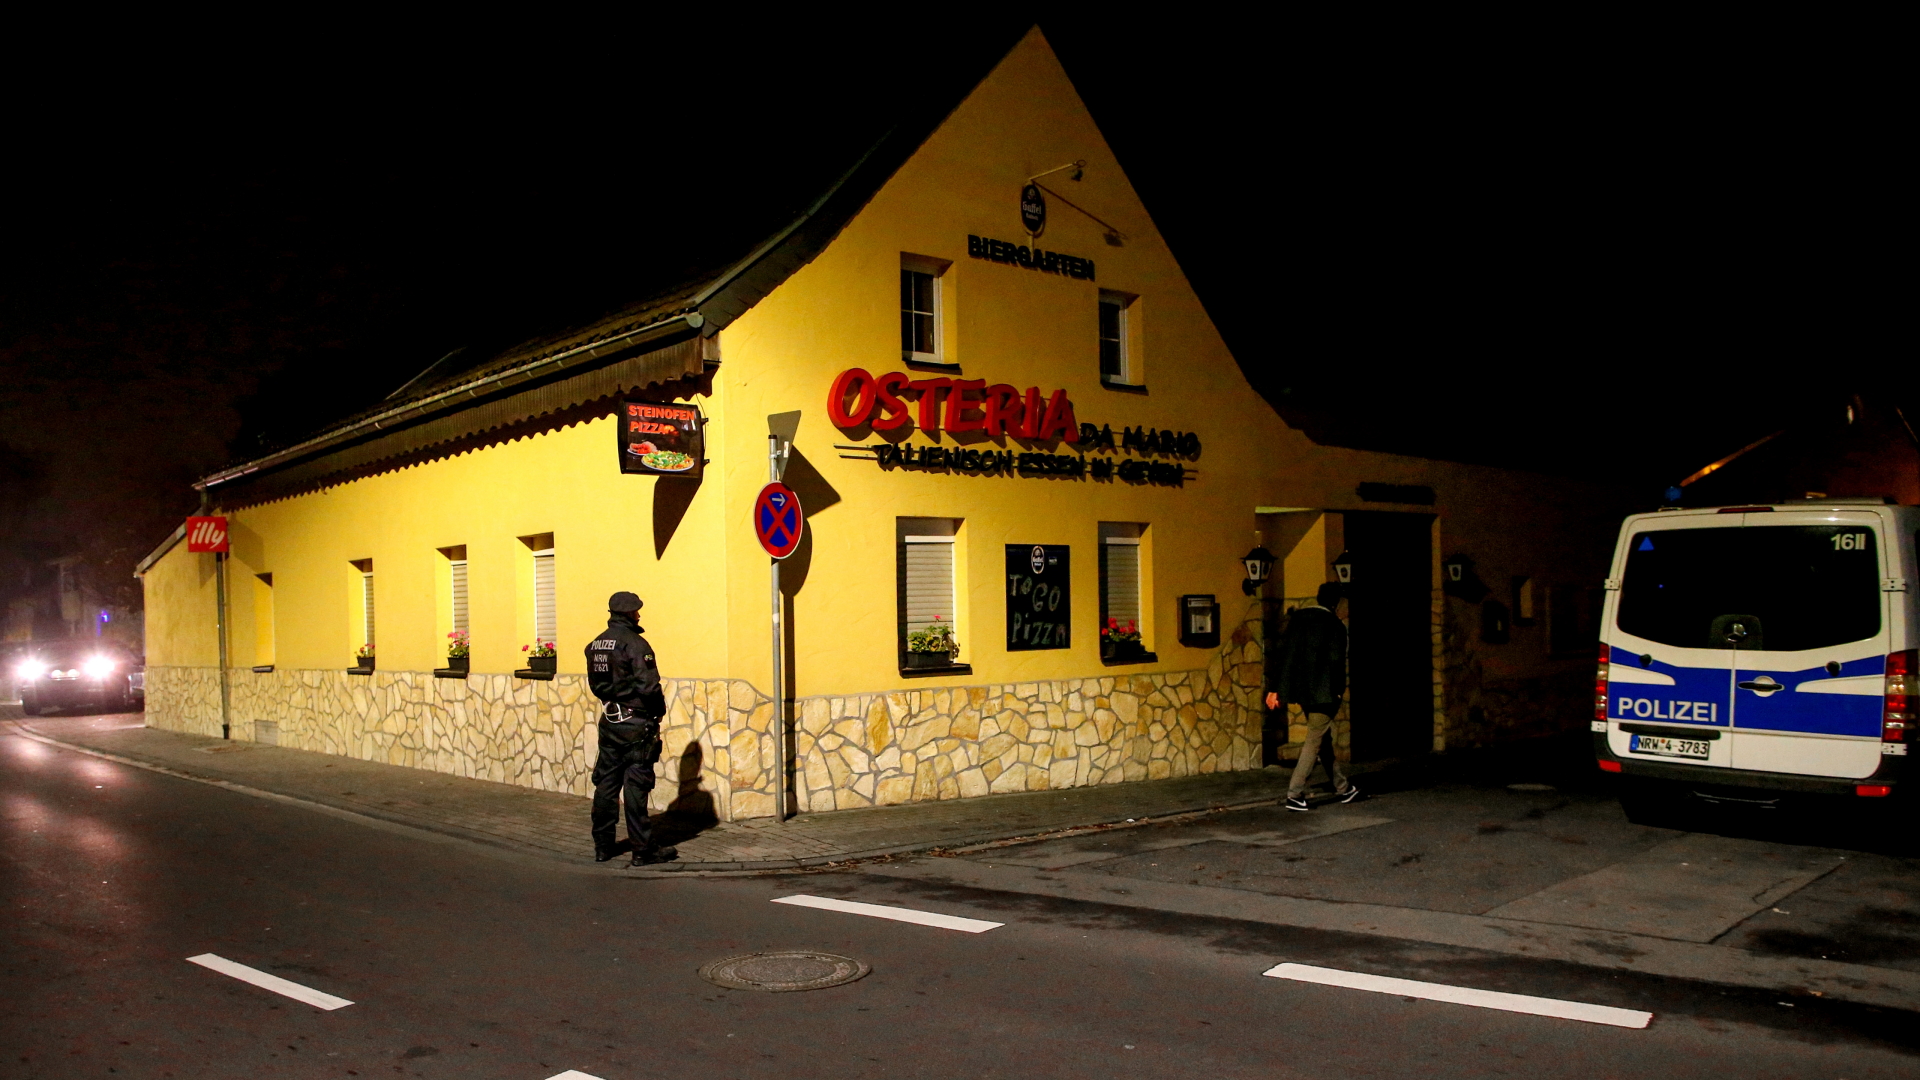 Polizisten durchsuchen ein italienisches Restaurant in Pulheim. | Bildquelle: SASCHA STEINBACH/EPA-EFE/REX/Shu